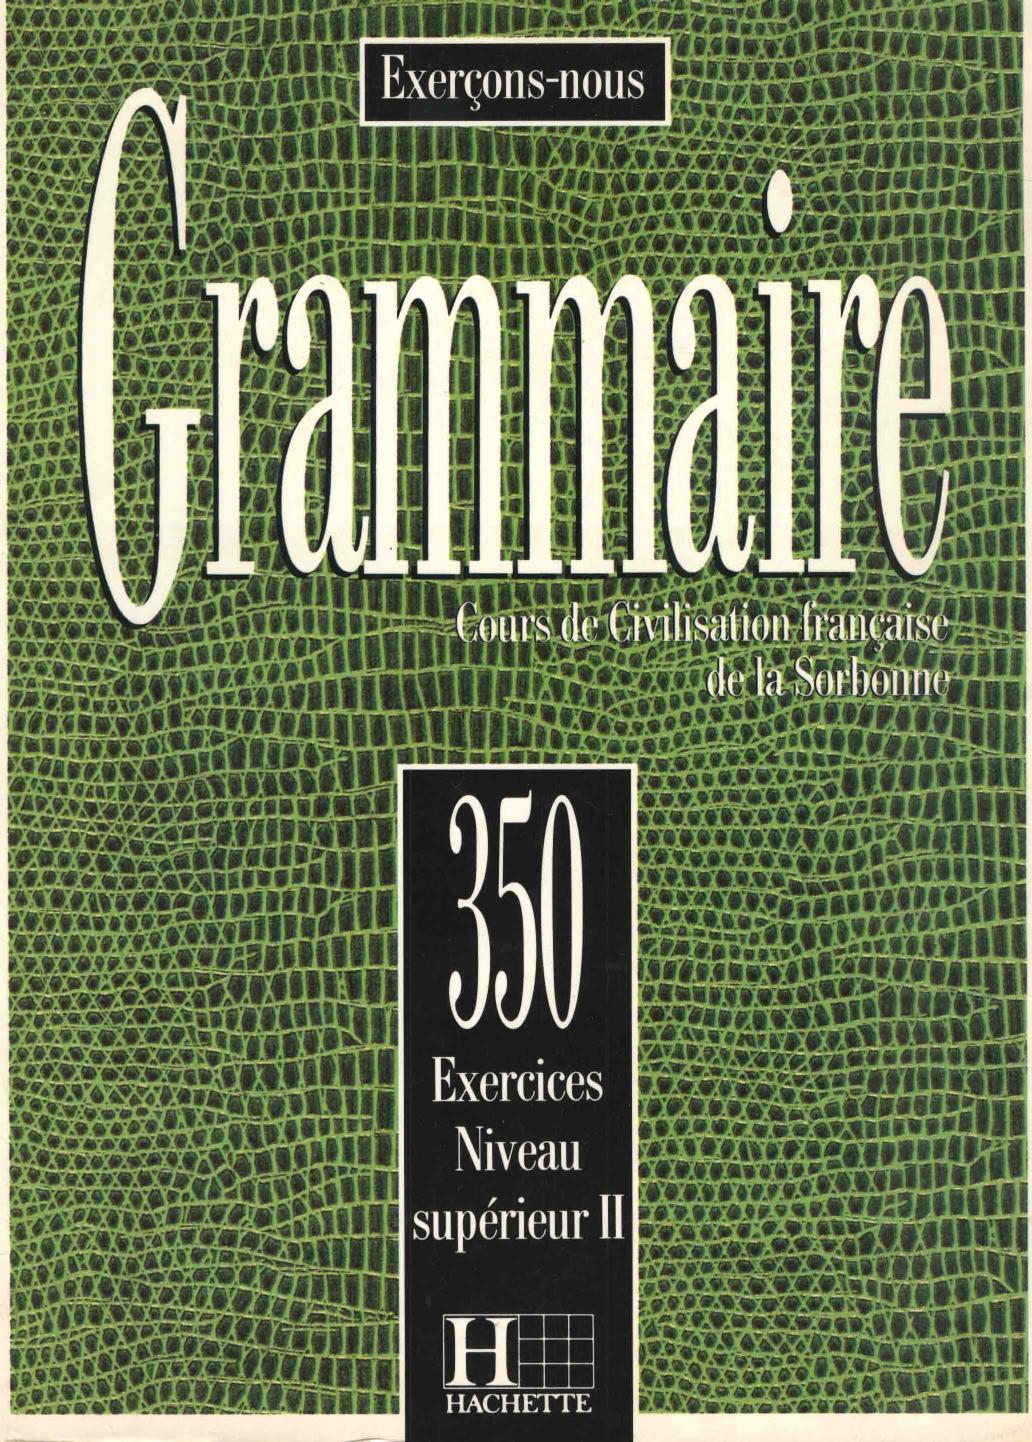 Grammaire cours de civilisation francaise de la sorbonne 1957